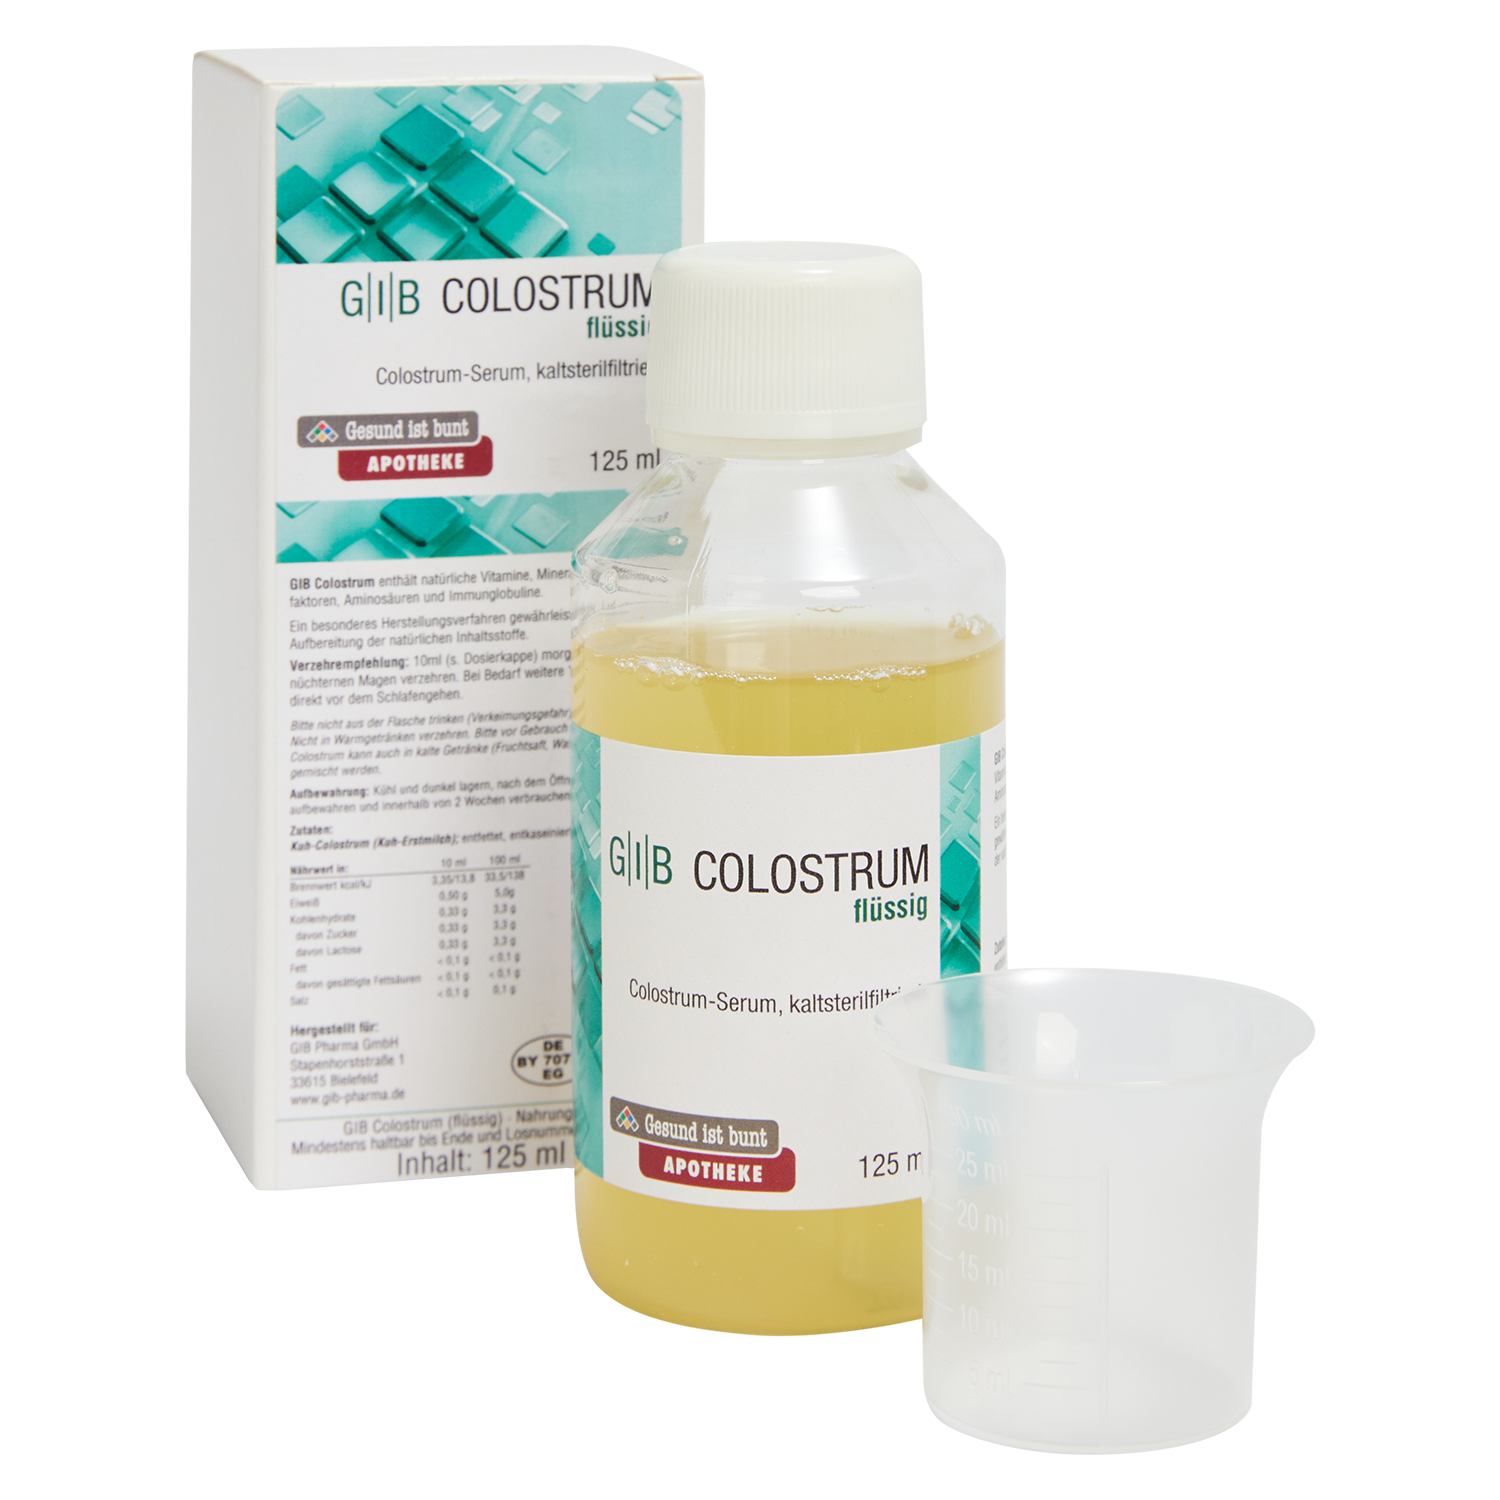 G|I|B Colostrum, 125 ml flüssig 